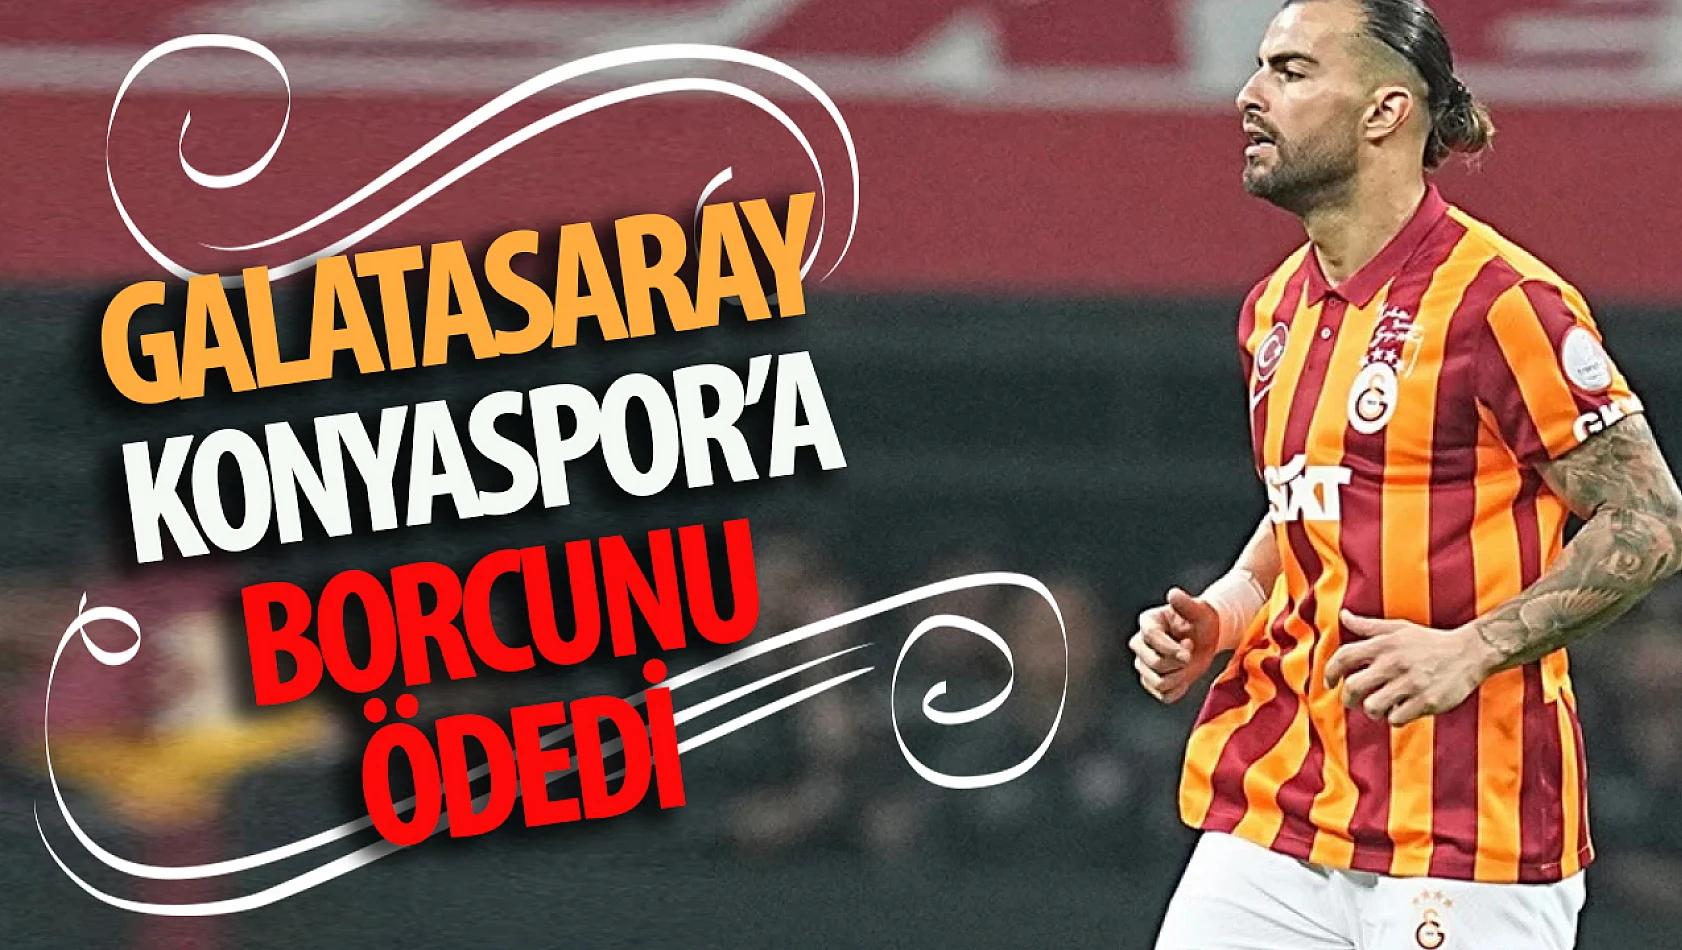 Galatasaray Konyaspor'a olan borcunu ödedi!